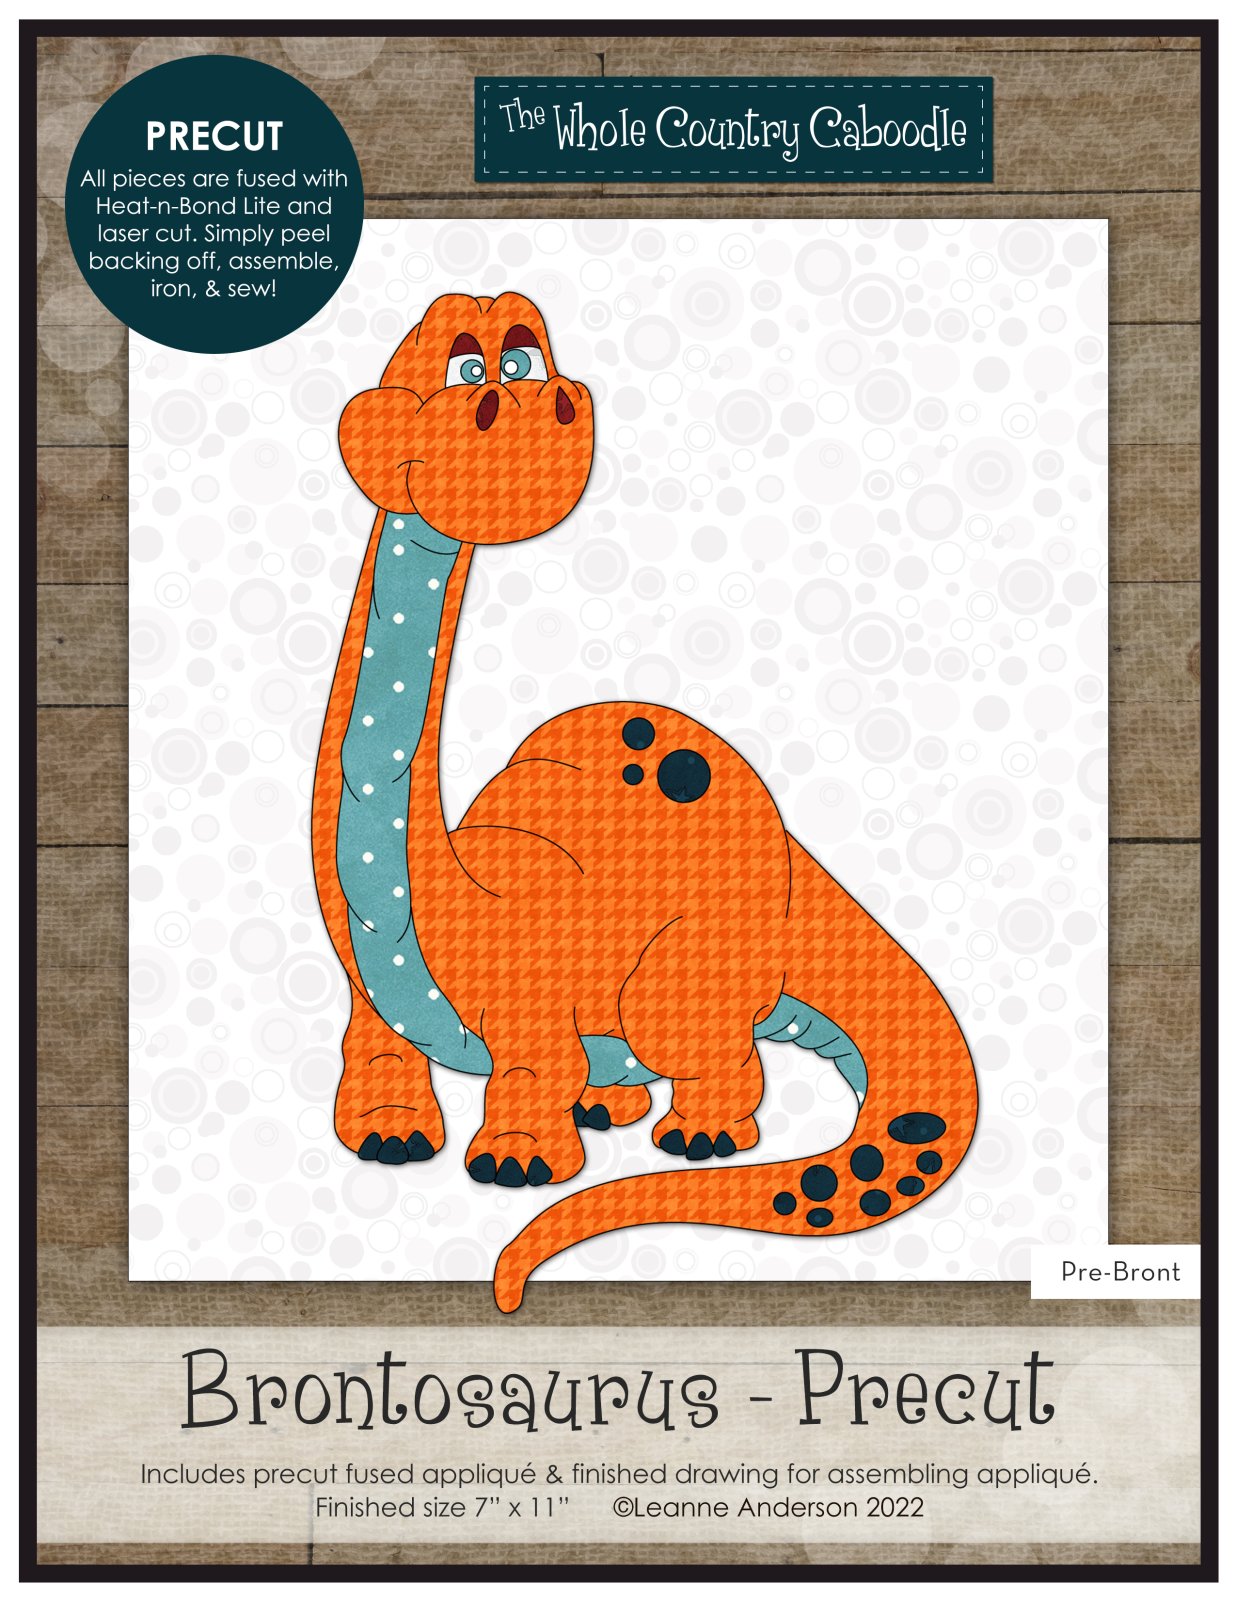 Brontosaurus Precut Fused Applique Pack